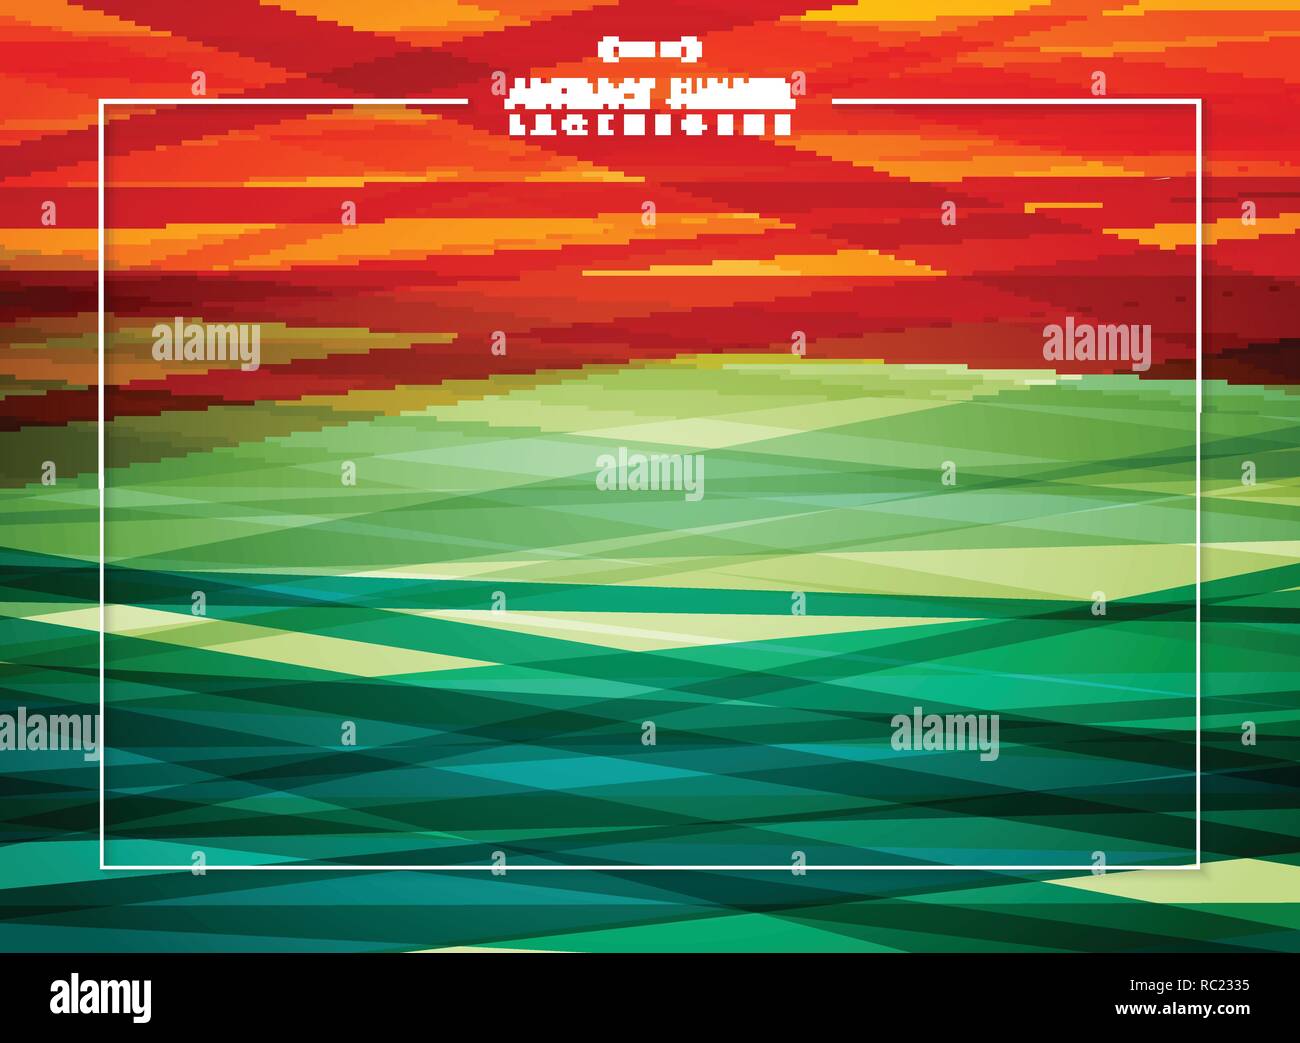 Zusammenfassung Hintergrund der Sommer bunte Streifen, Vector EPS 10. Stock Vektor